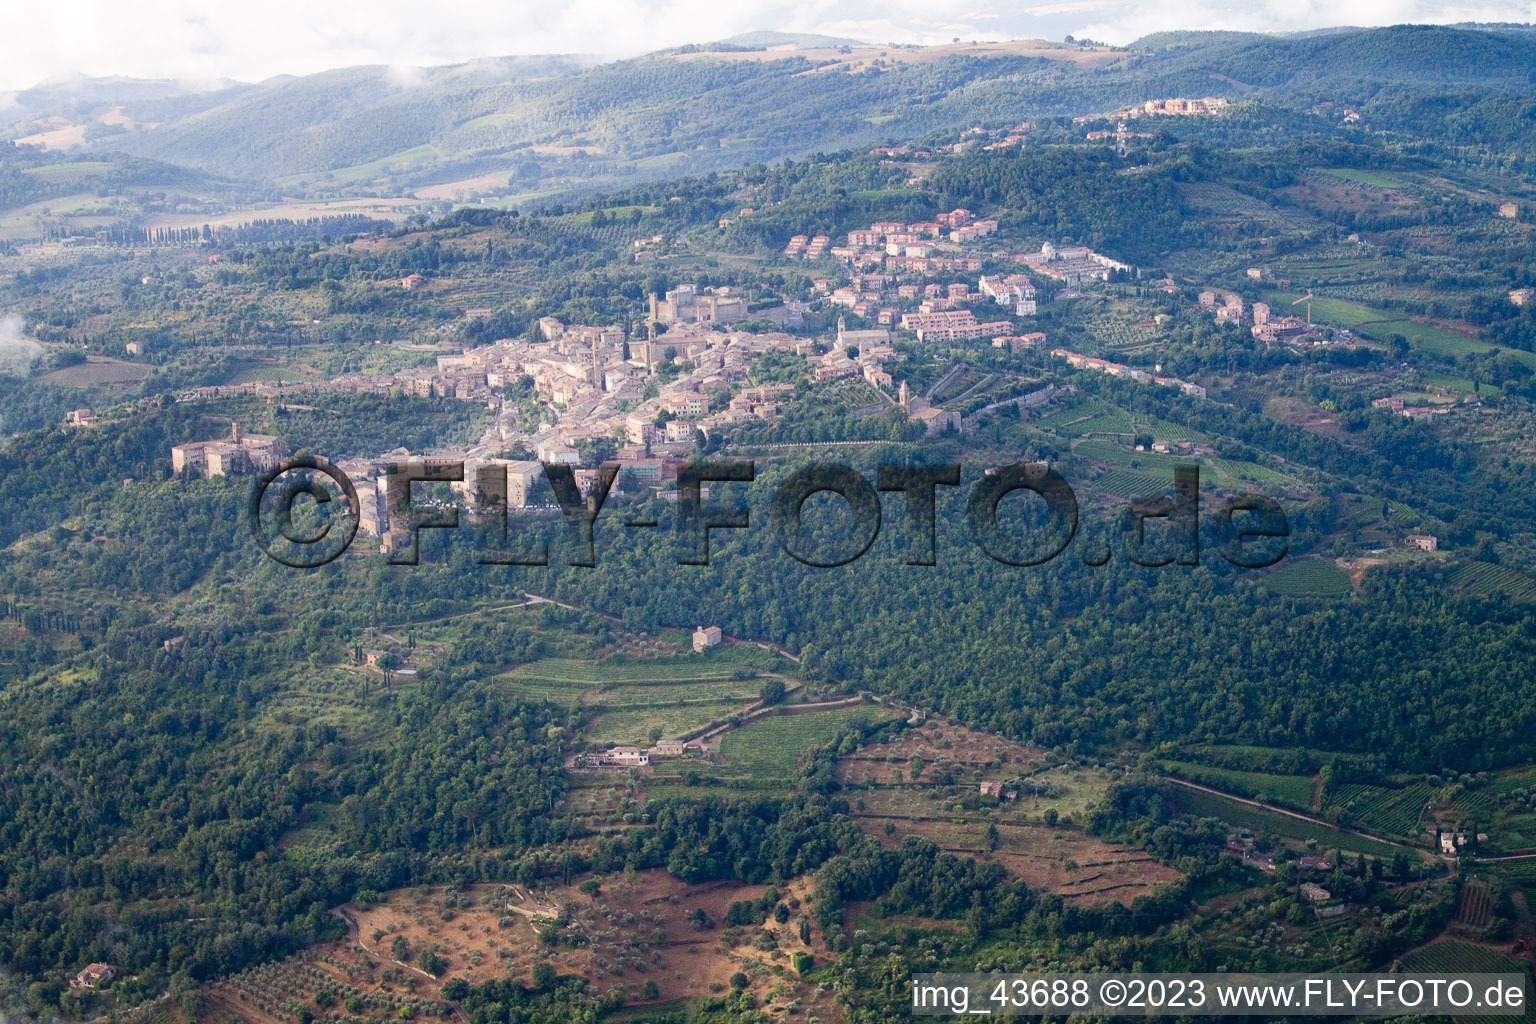 Luftbild von Montalcino im Bundesland Toscana, Italien